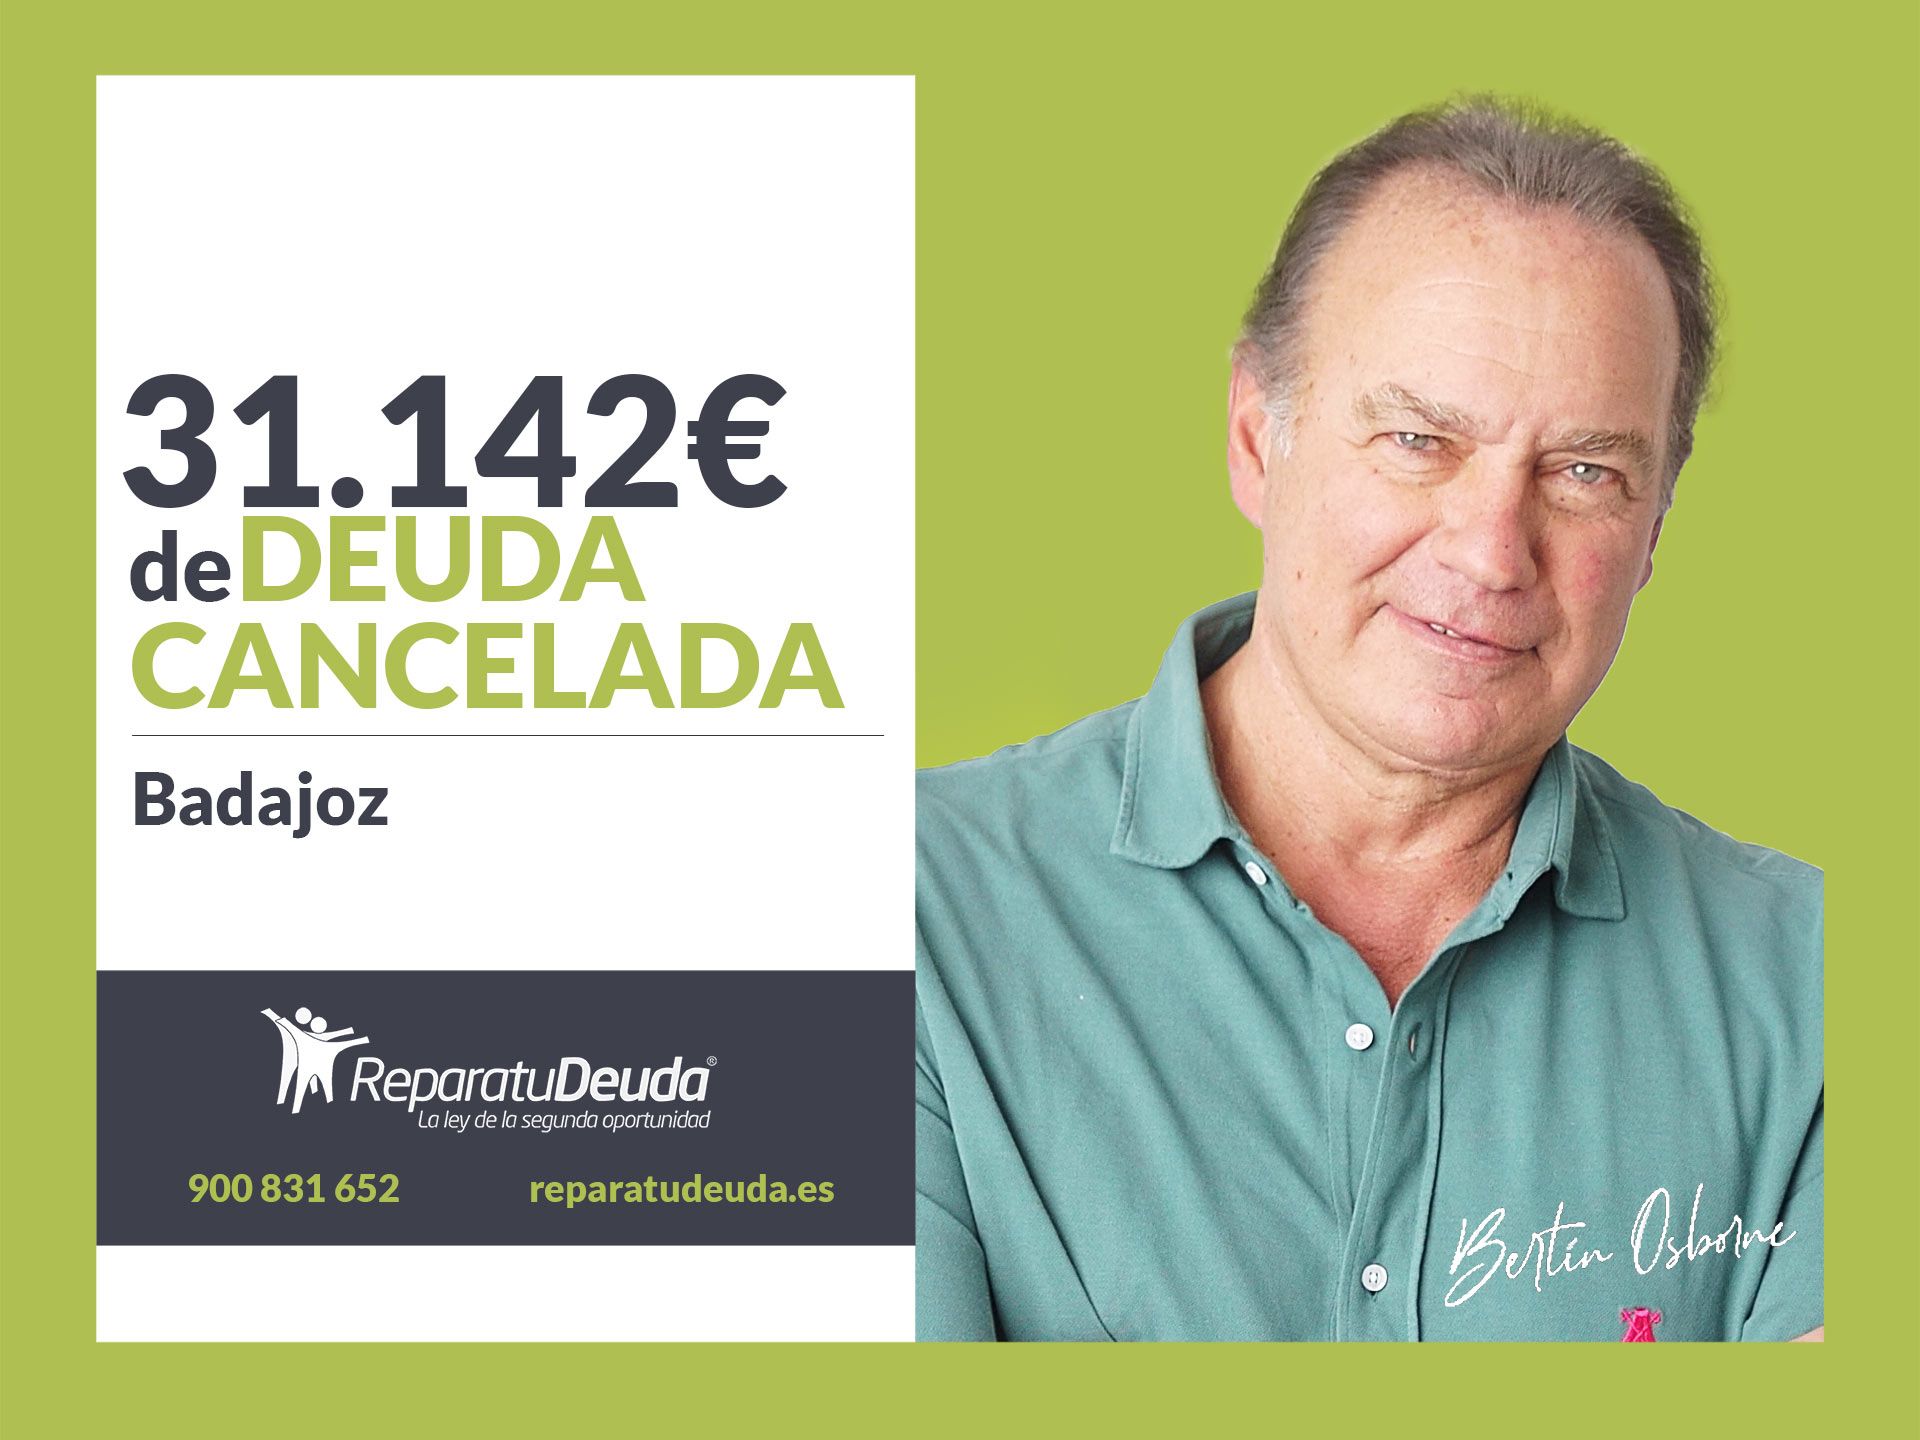 Repara tu Deuda Abogados cancela 31.142? en Badajoz (Extremadura) con la Ley de Segunda Oportunidad